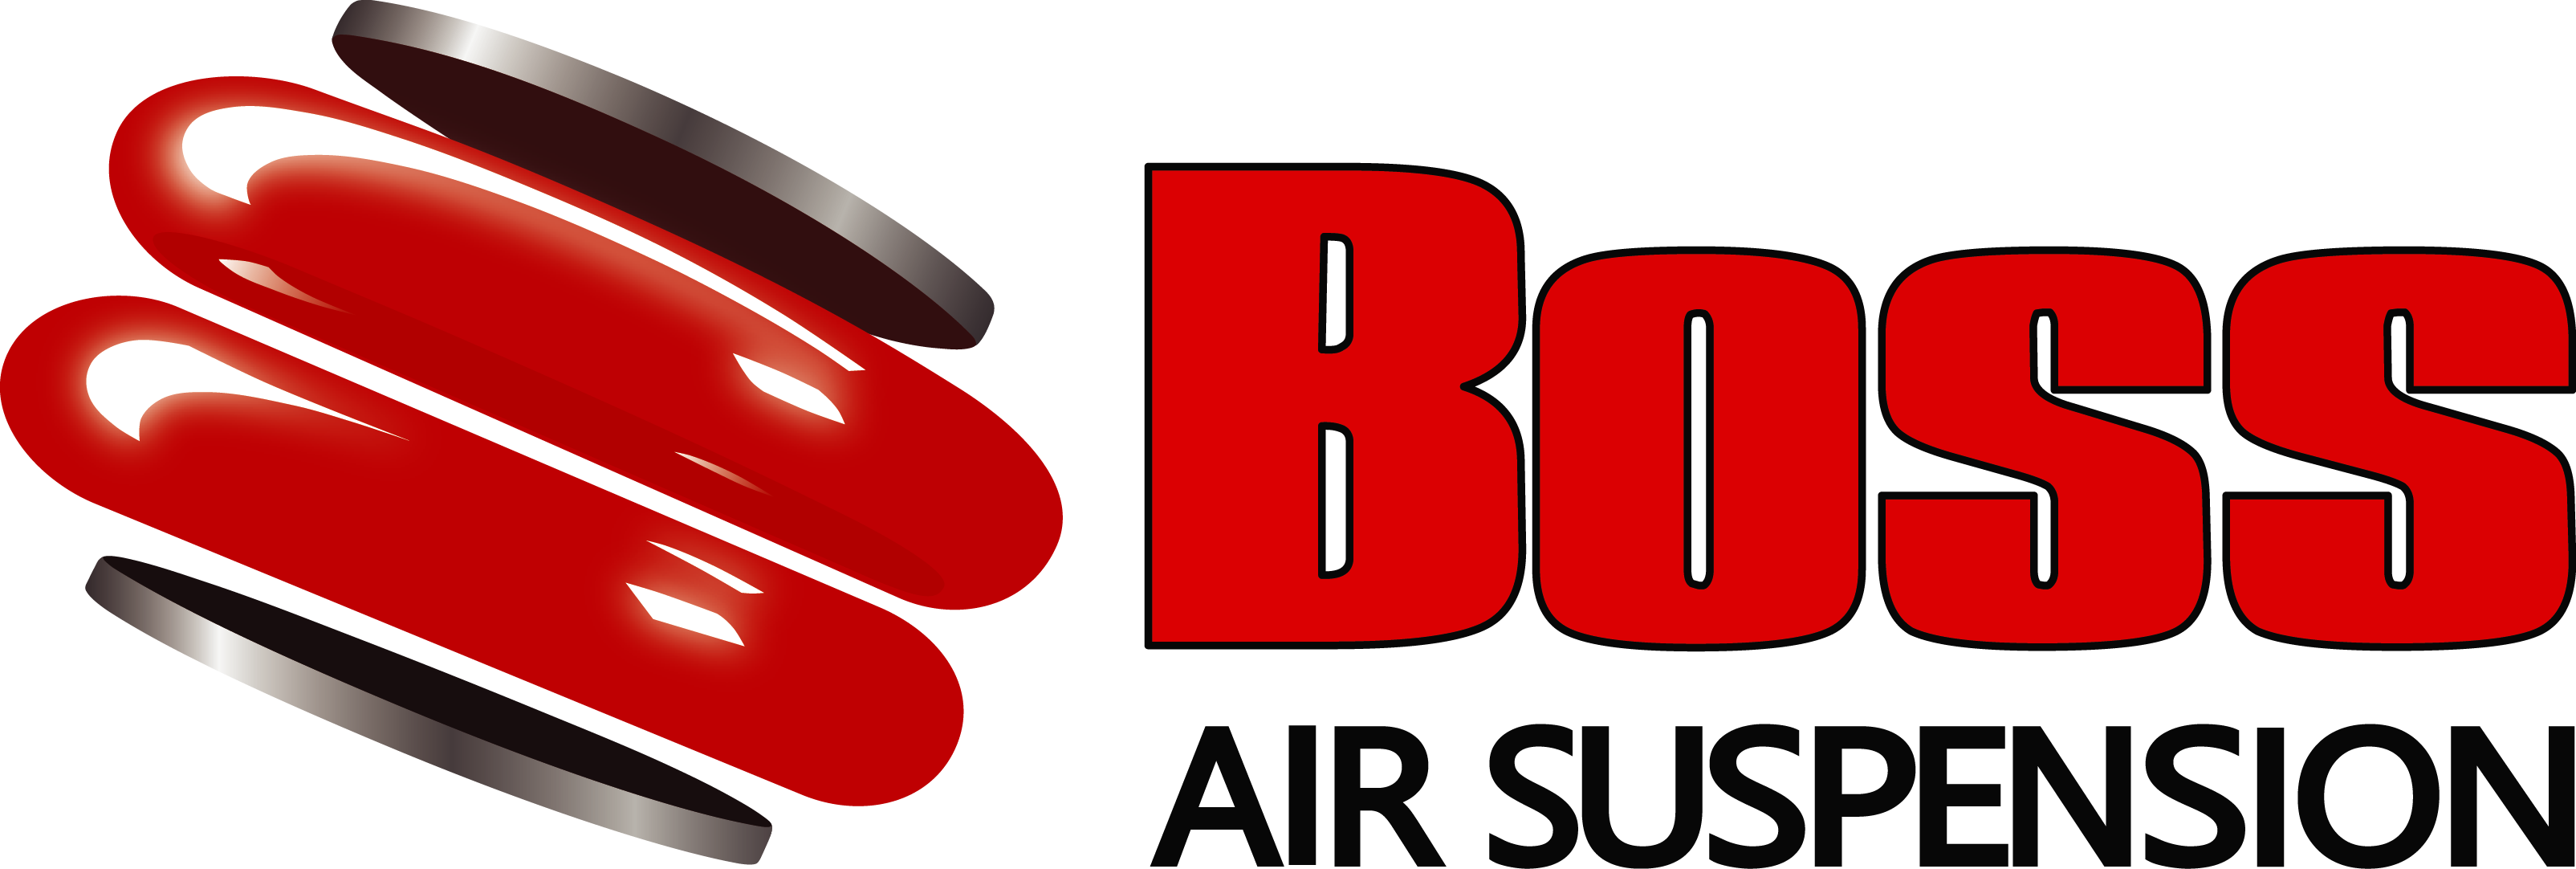 Boss Air Suspension - Networkcafe.com.au